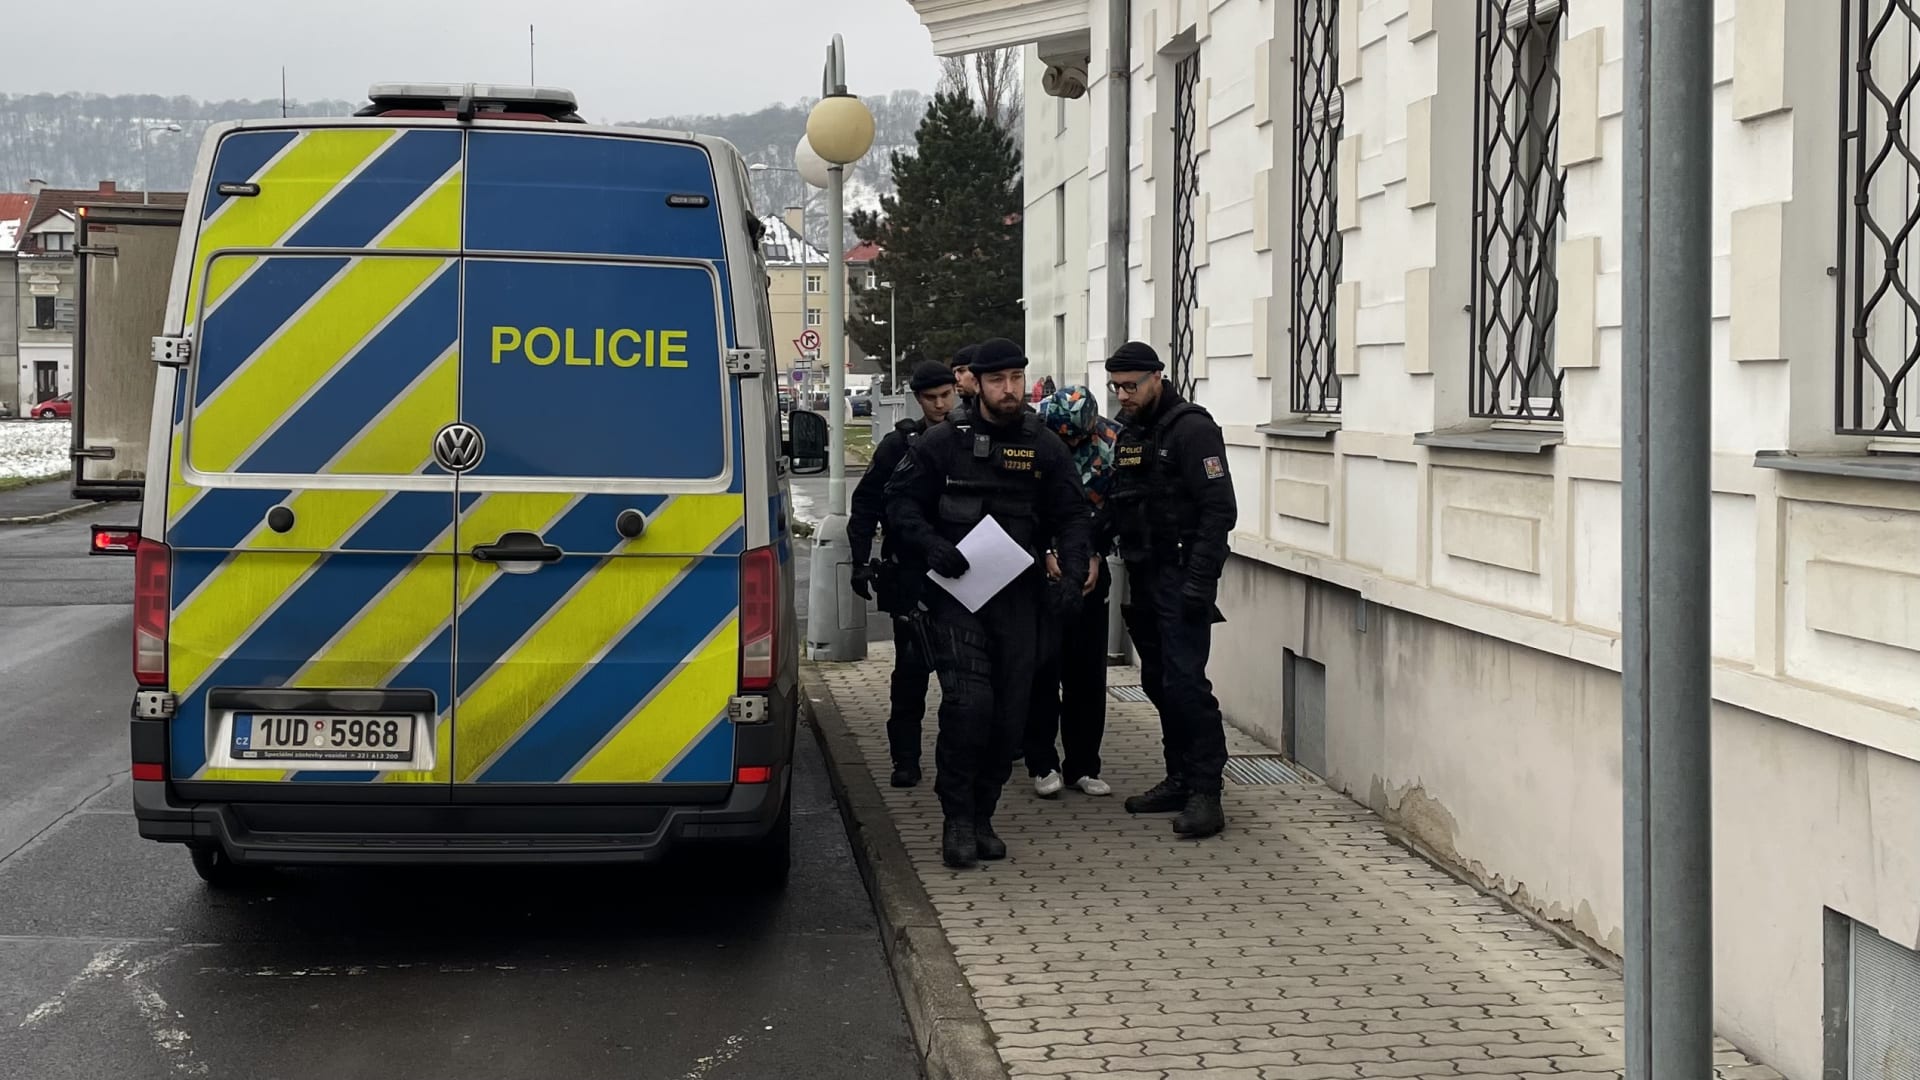 Okresní soud v Ústí nad Labem poslal v pátek do vazby 38letého dělníka, který je obviněný z říjnové vraždy muže v Ústí nad Labem.